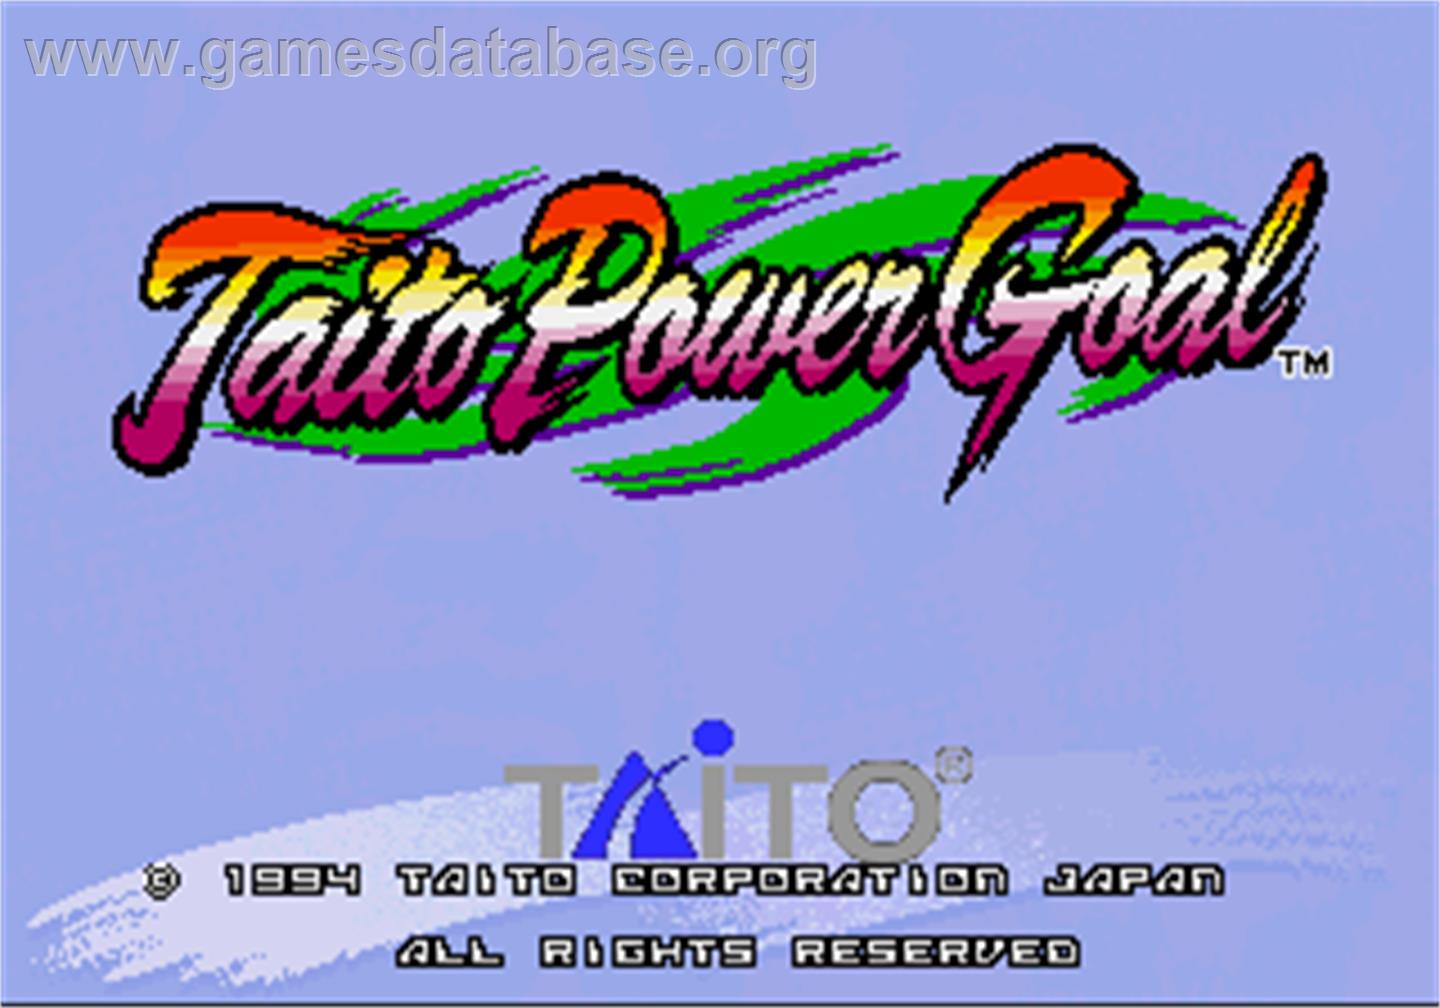 Taito Power Goal - Arcade - Artwork - Title Screen